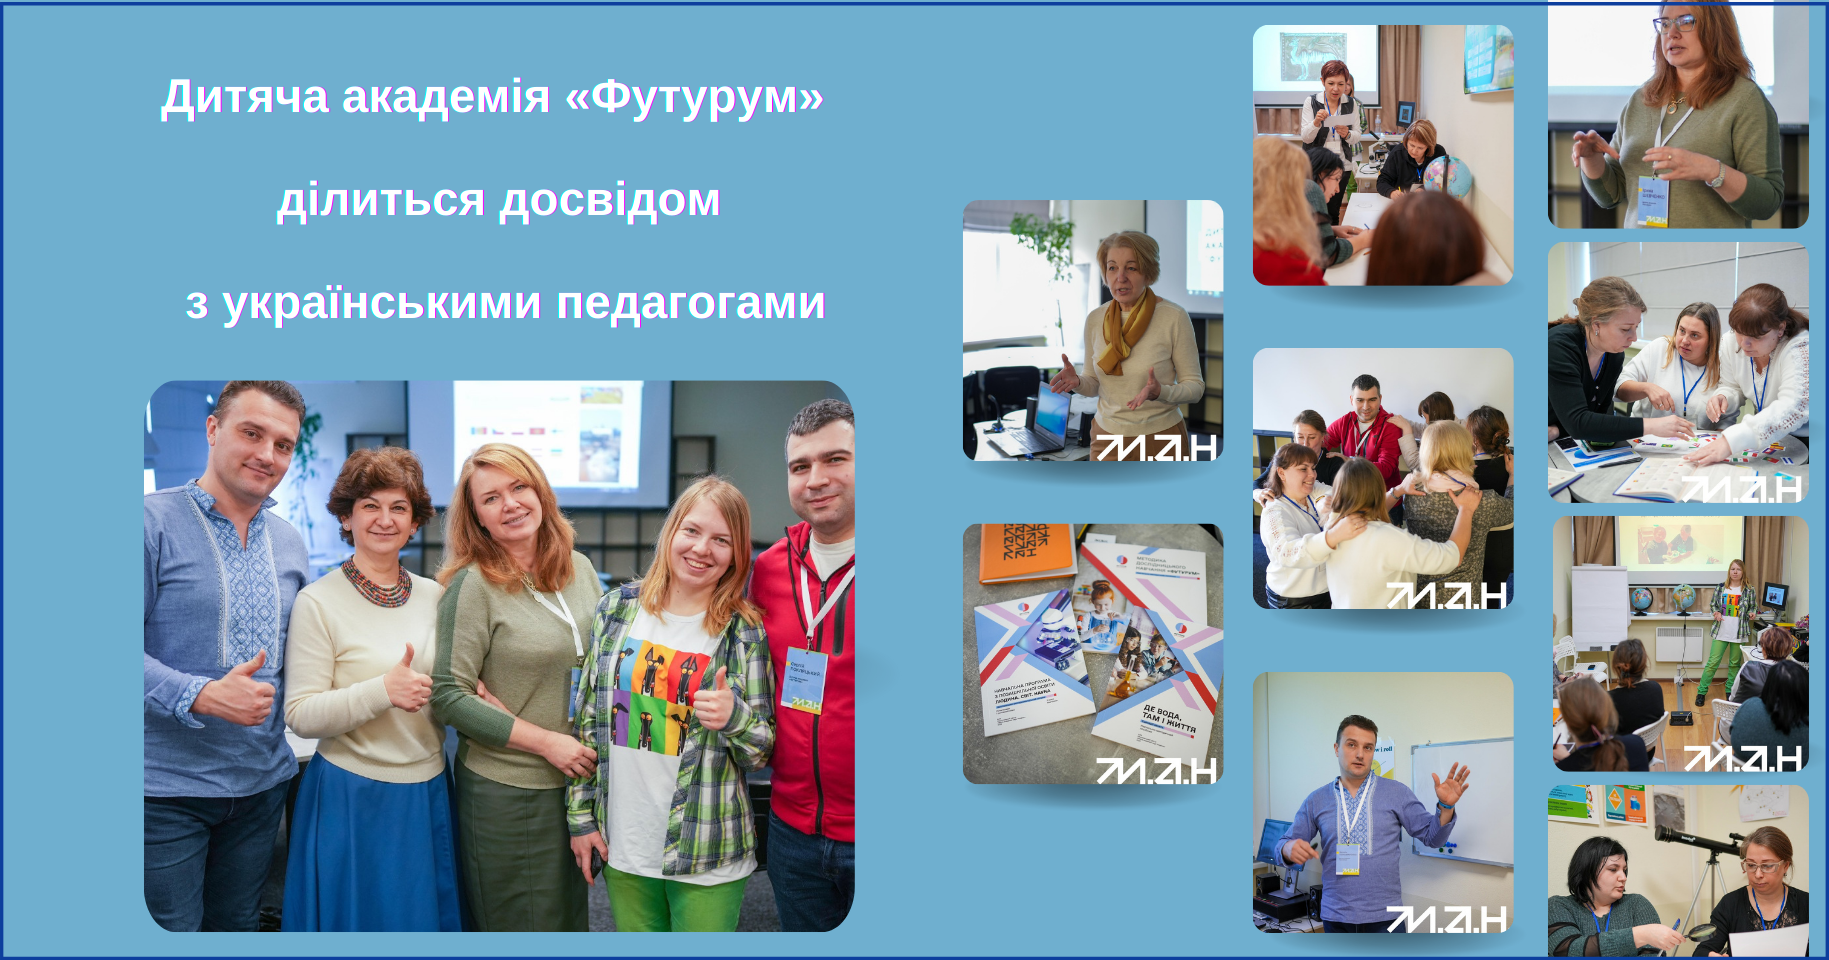 Дитяча академія «Футурум» ділиться досвідом з українськими педагогами